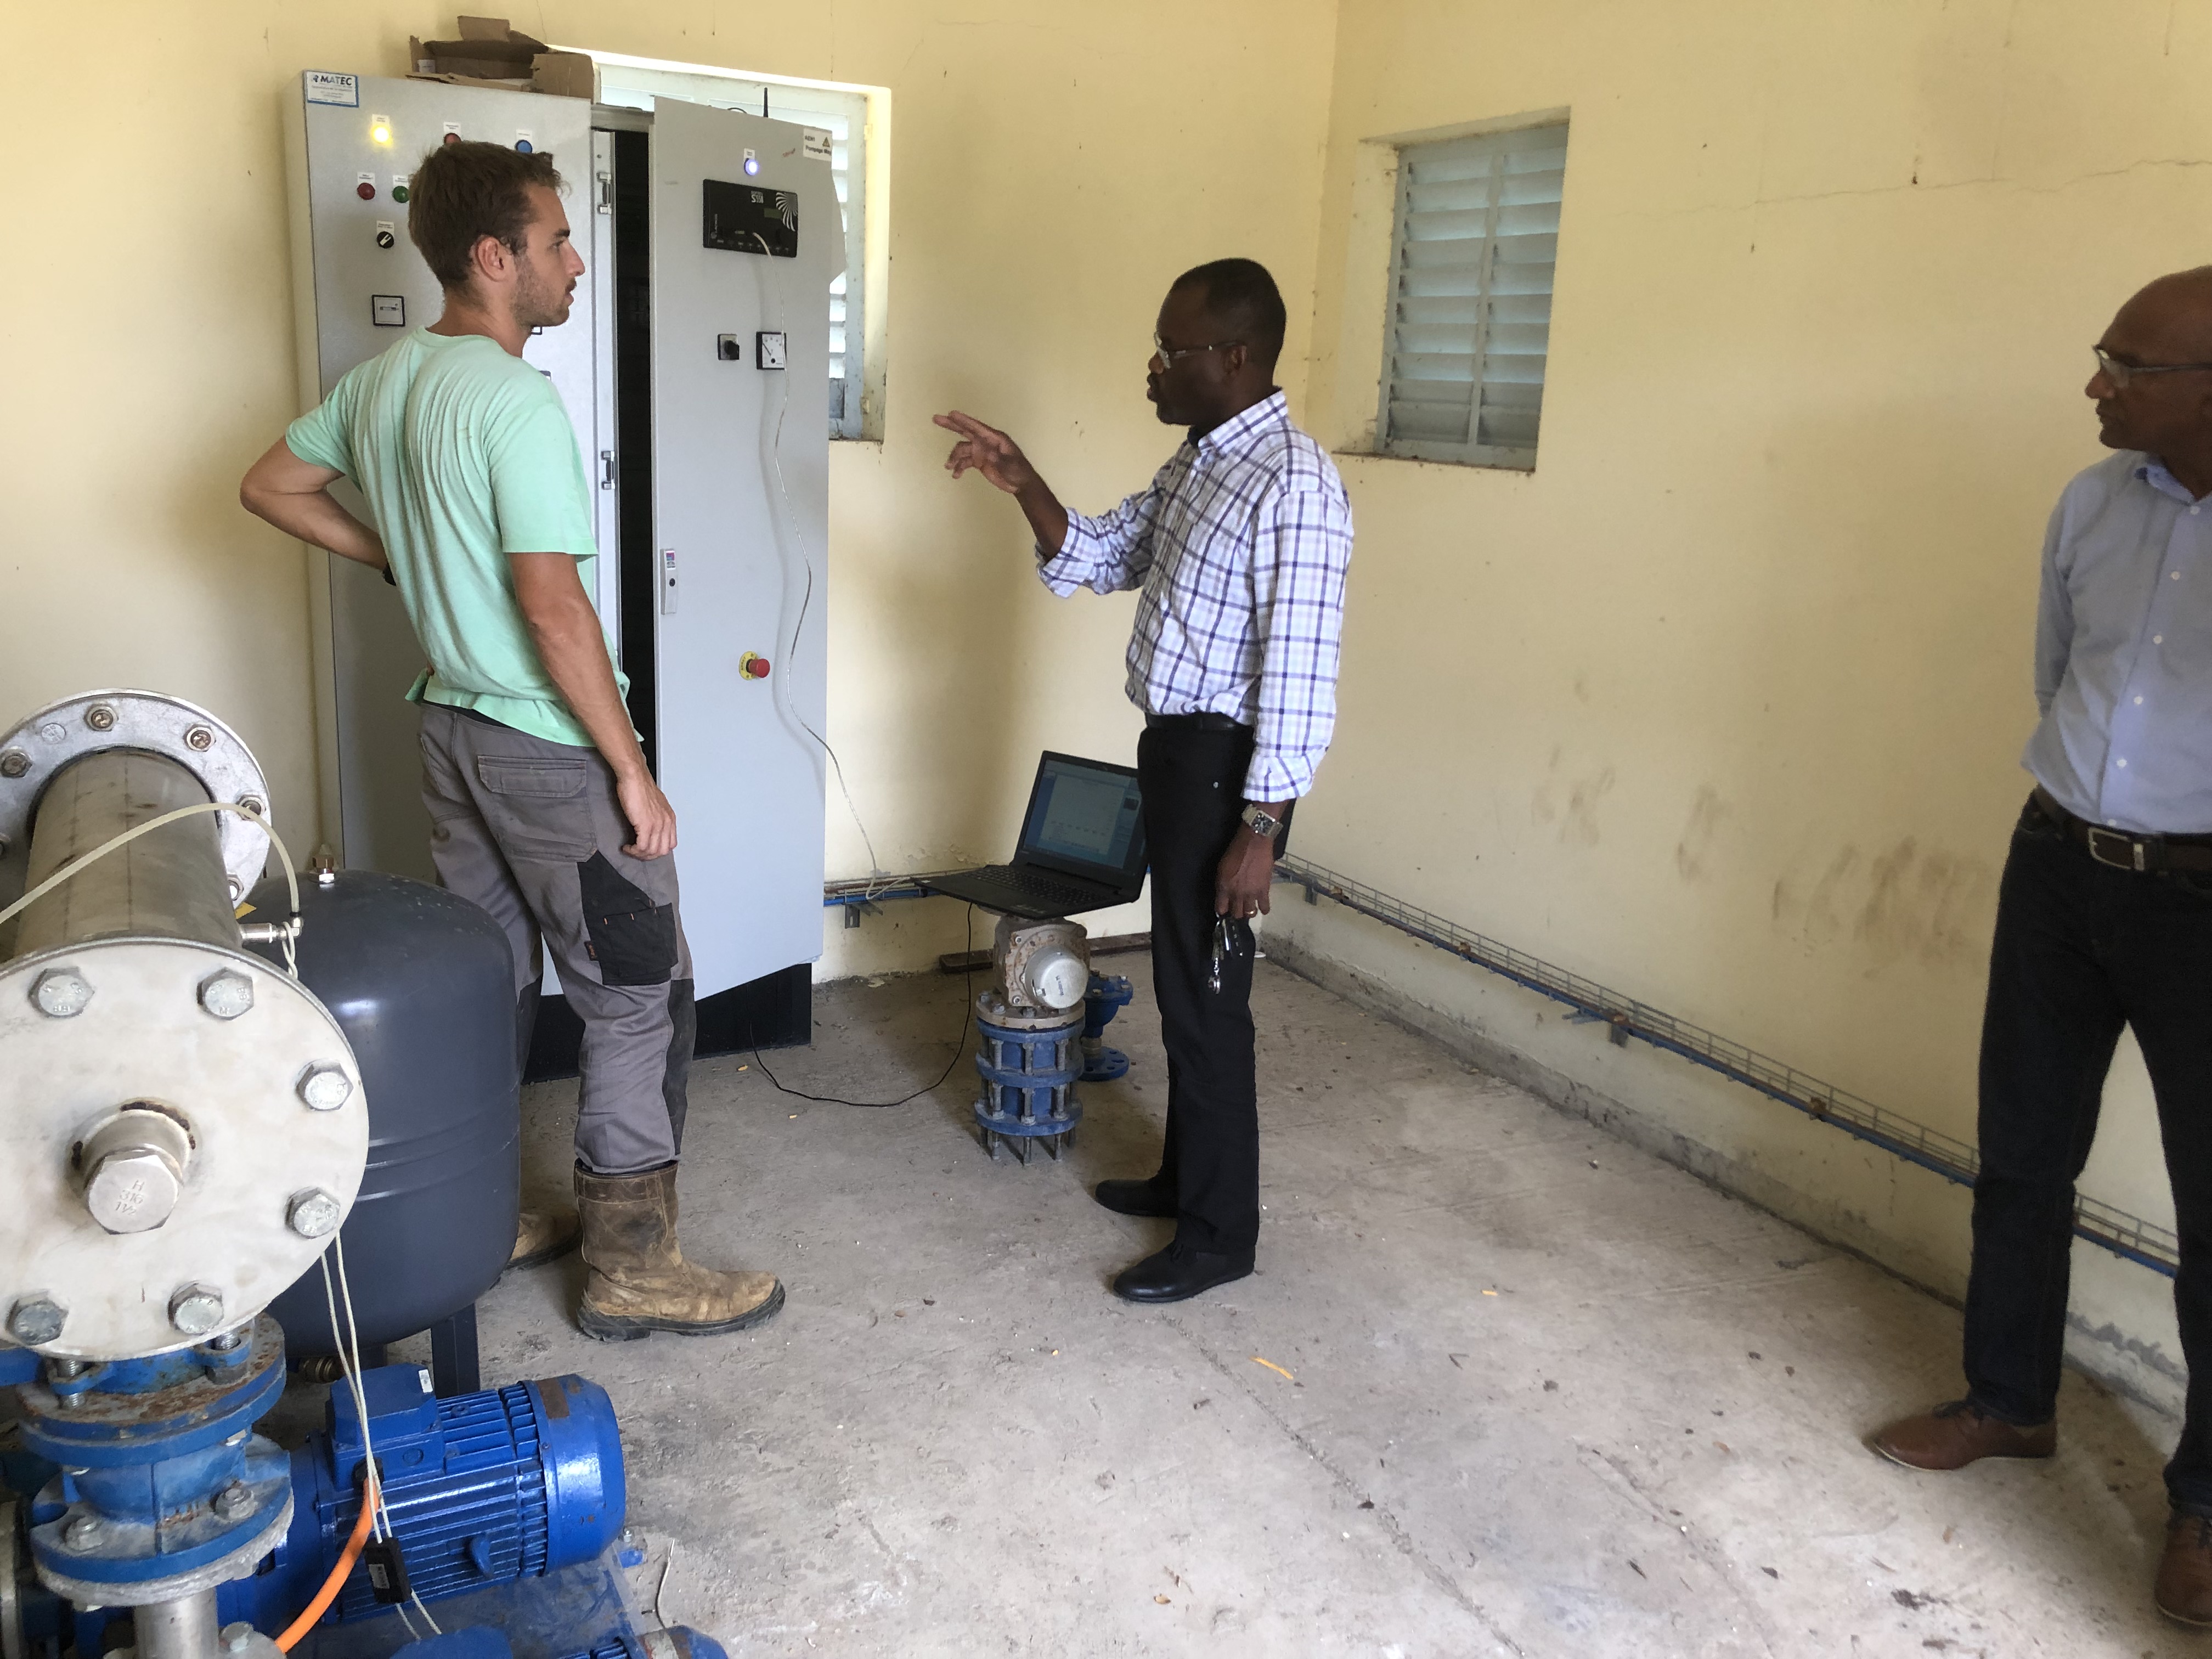     Comment le SIAEAG et le Conseil Départemental comptent réduire les coupures d'eau à Saint-François

